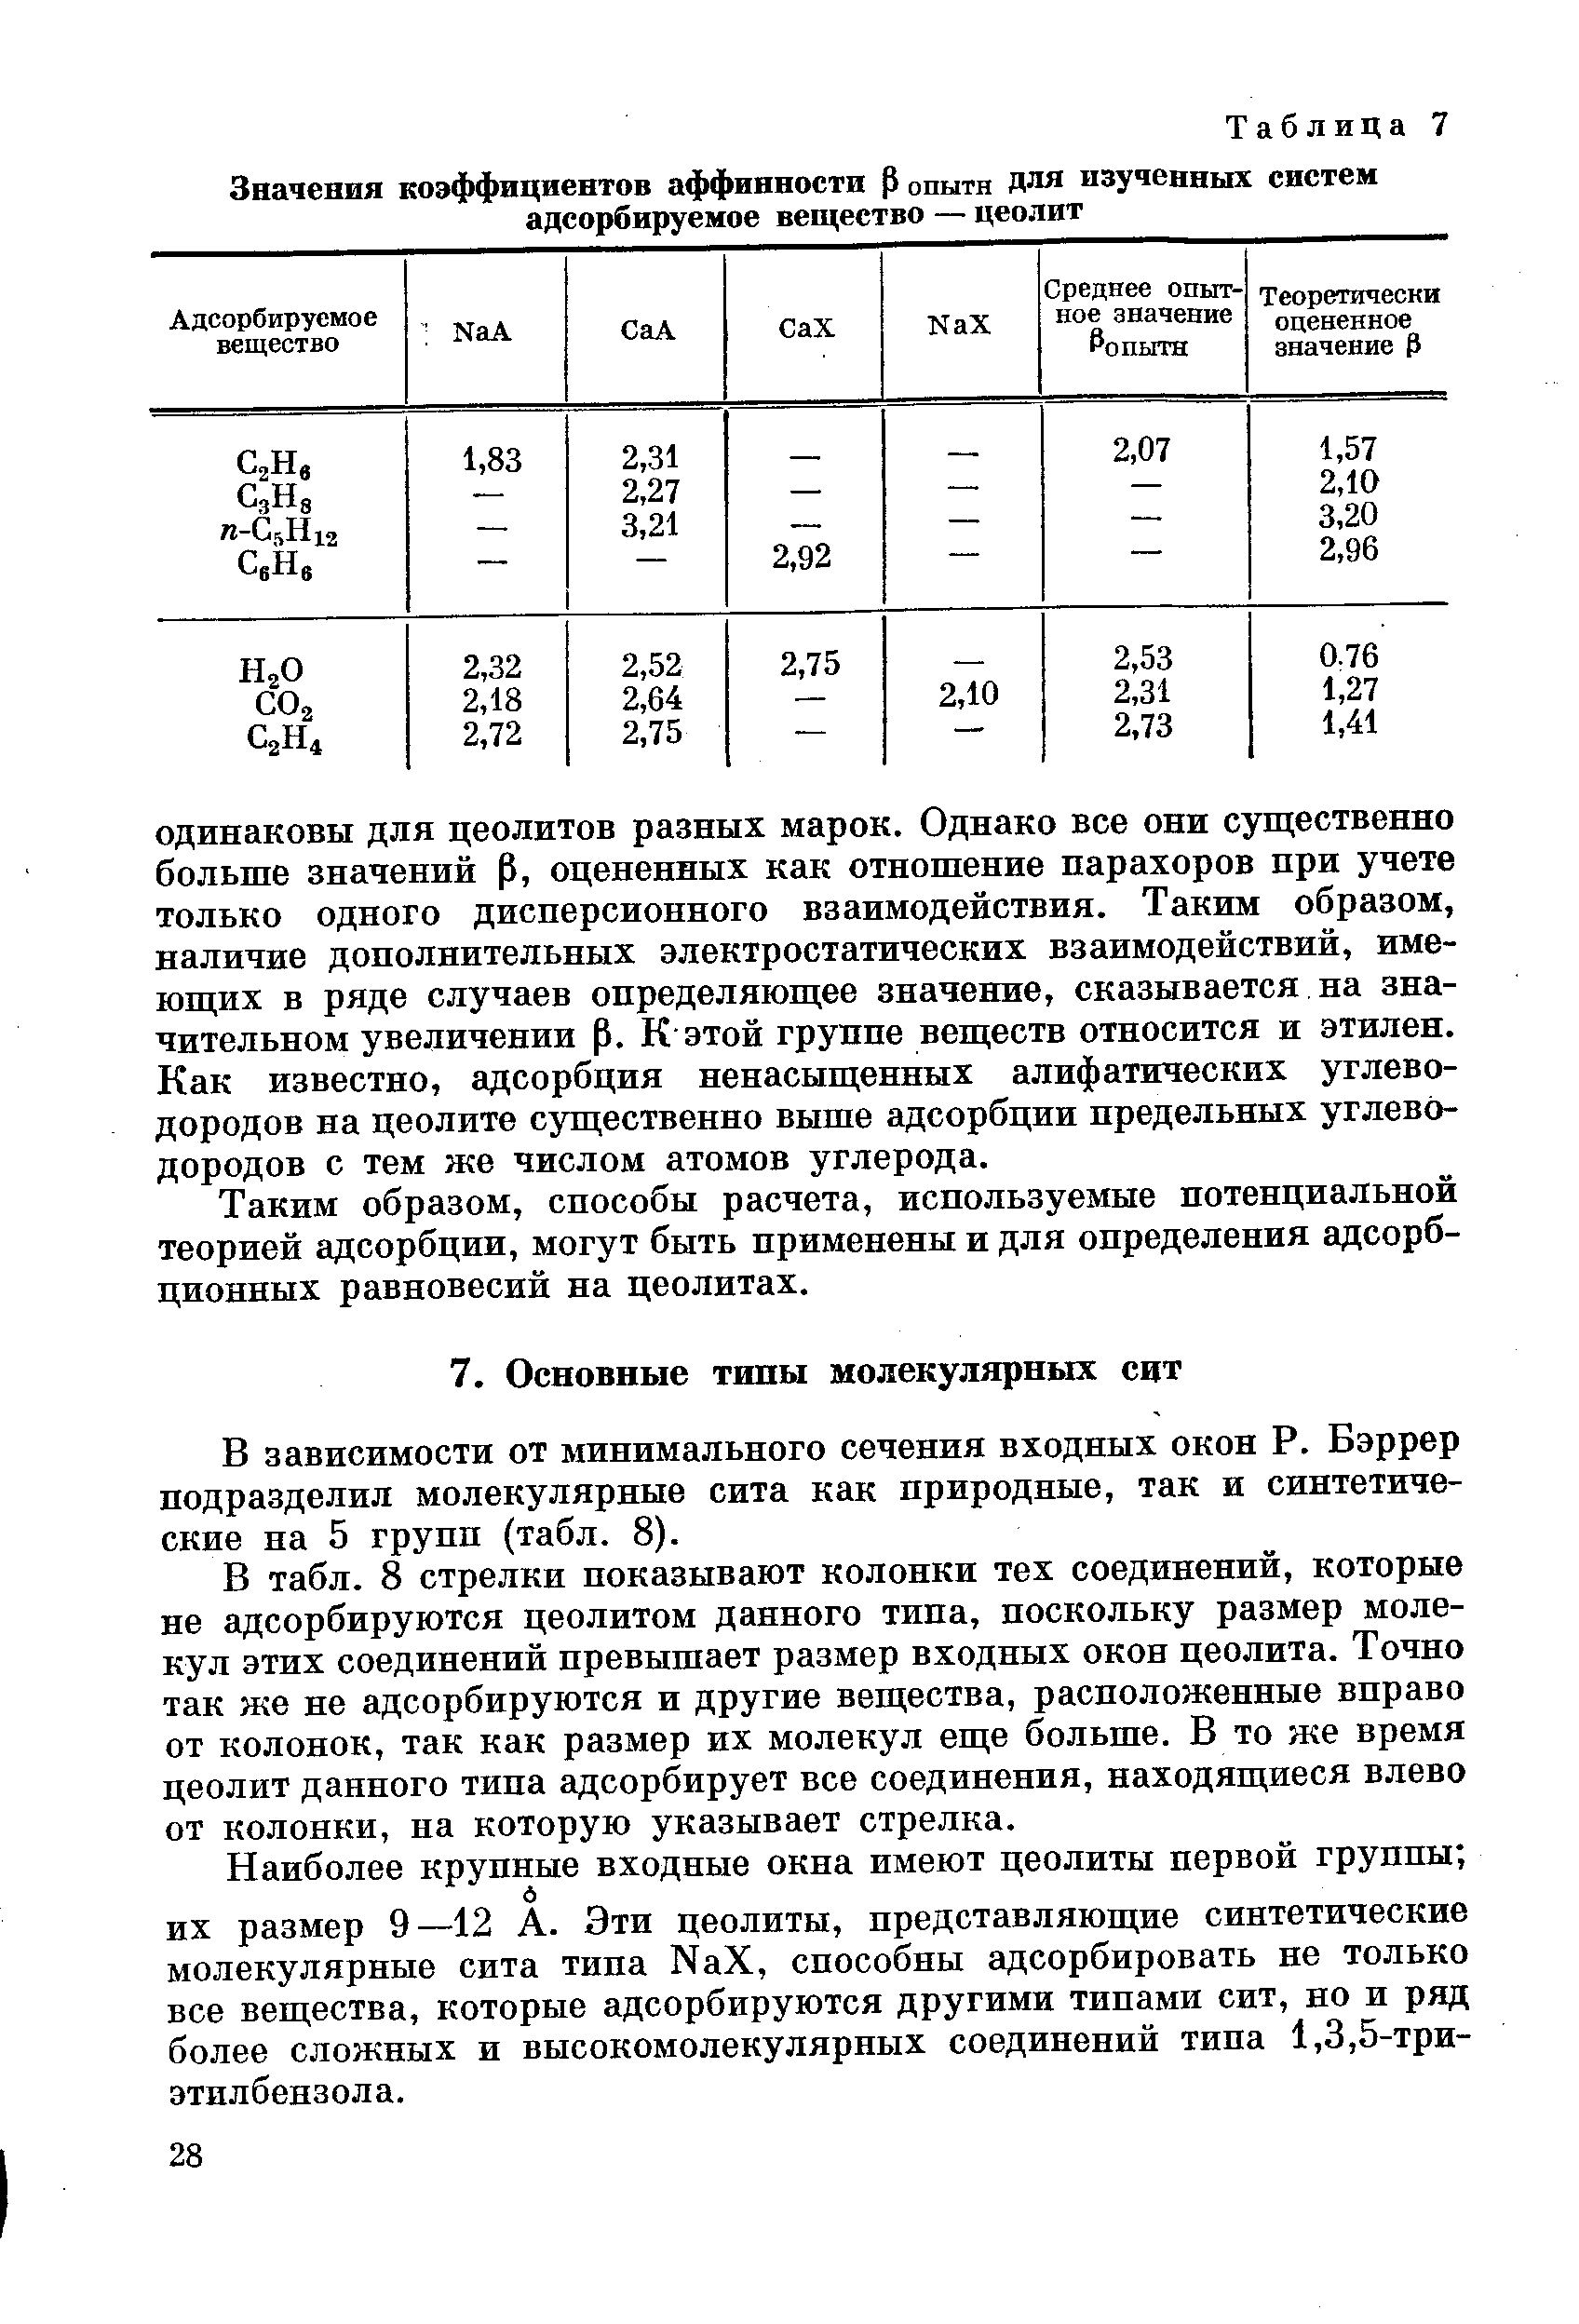 В зависимости от минимального сечения входных окон Р. Бэррер подразделил молекулярные сита как природные, так и синтетические на 5 групп (табл. 8).